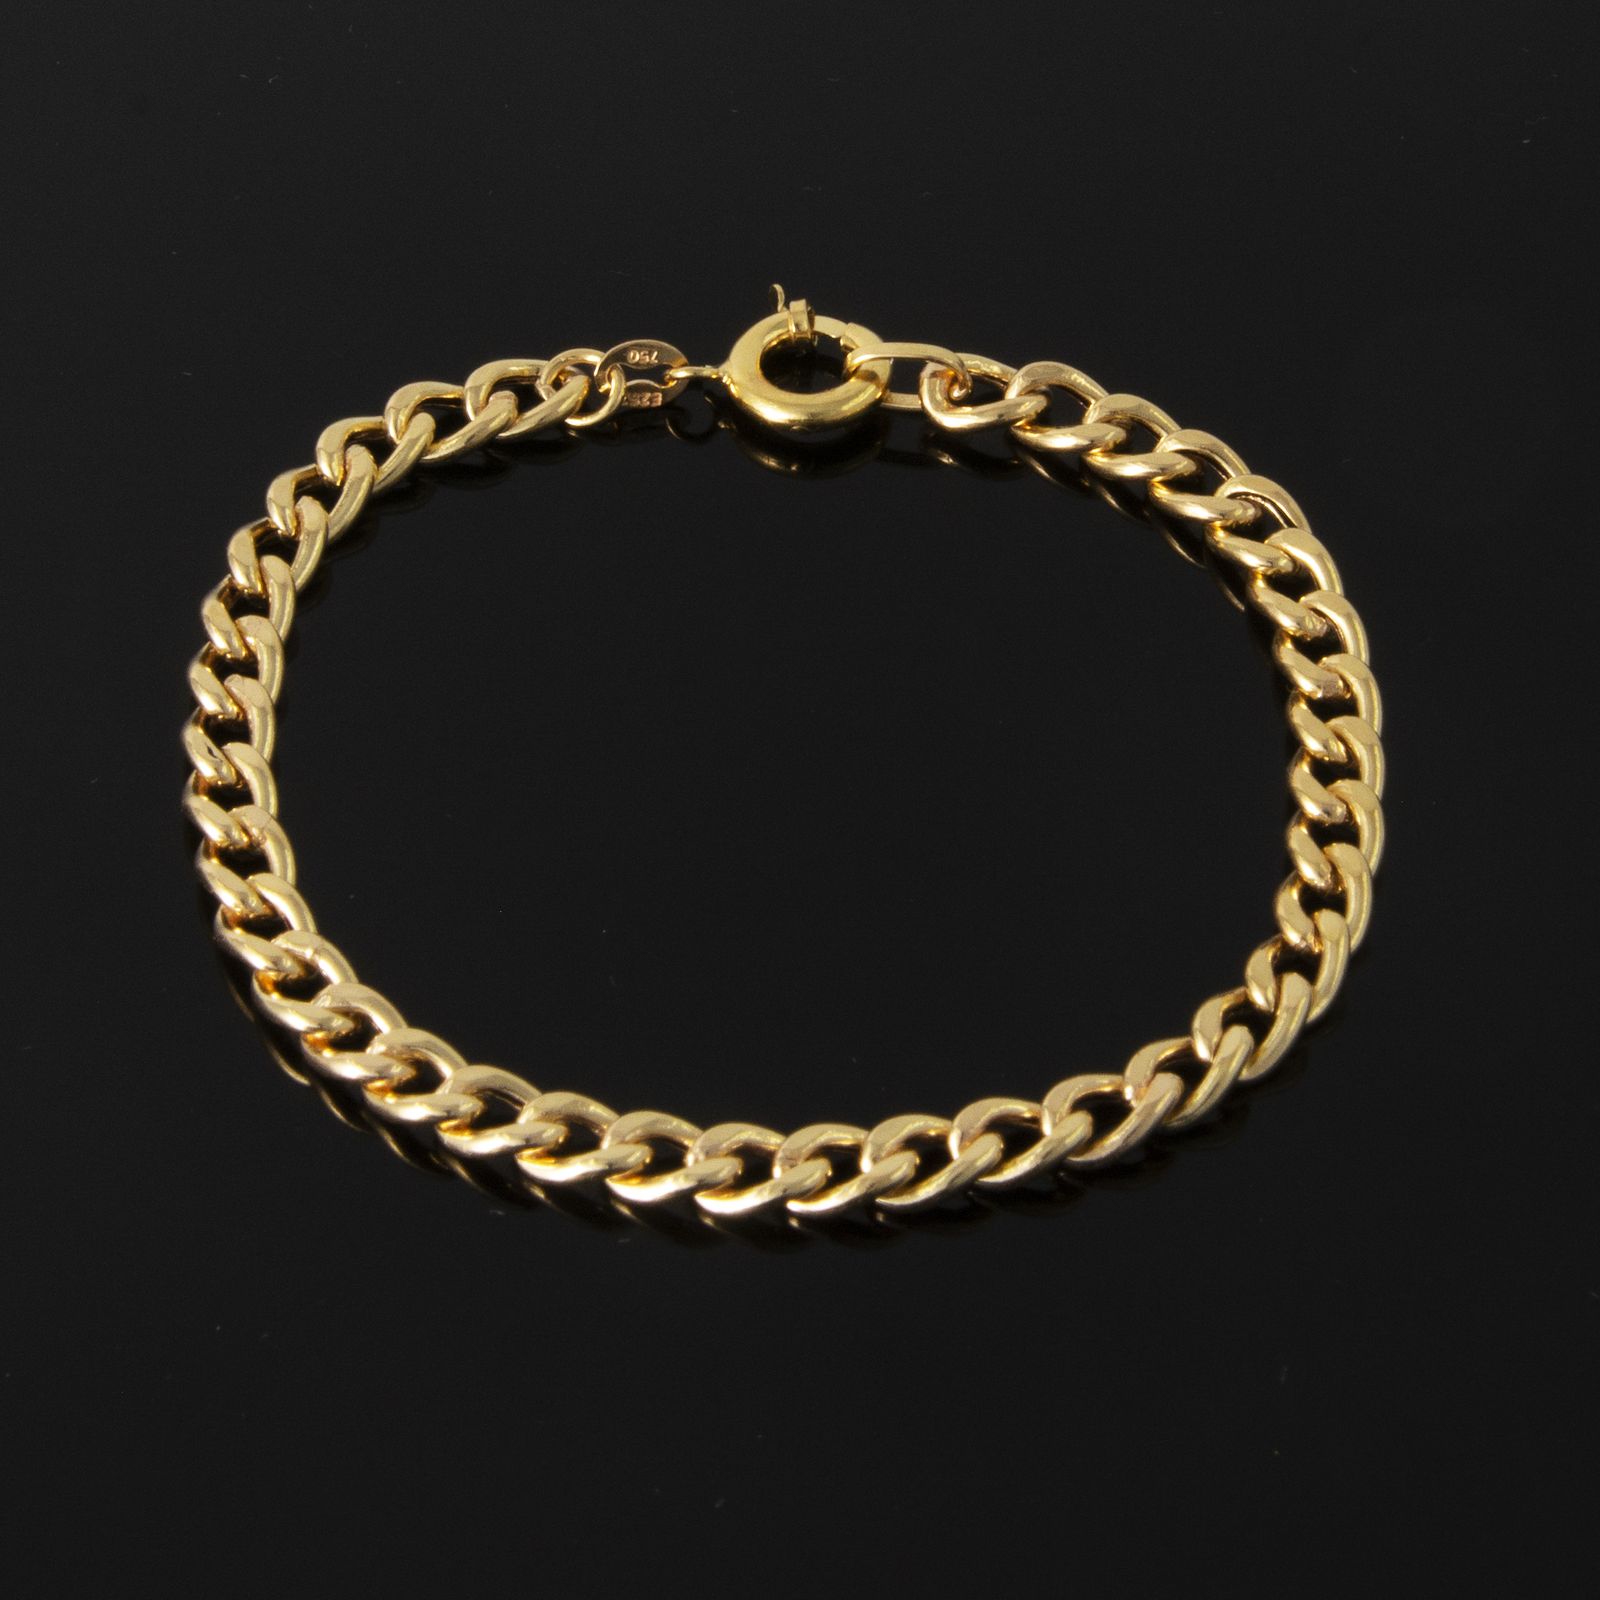  دستبند طلا 18 عیار زنانه کد 67110 -  - 1